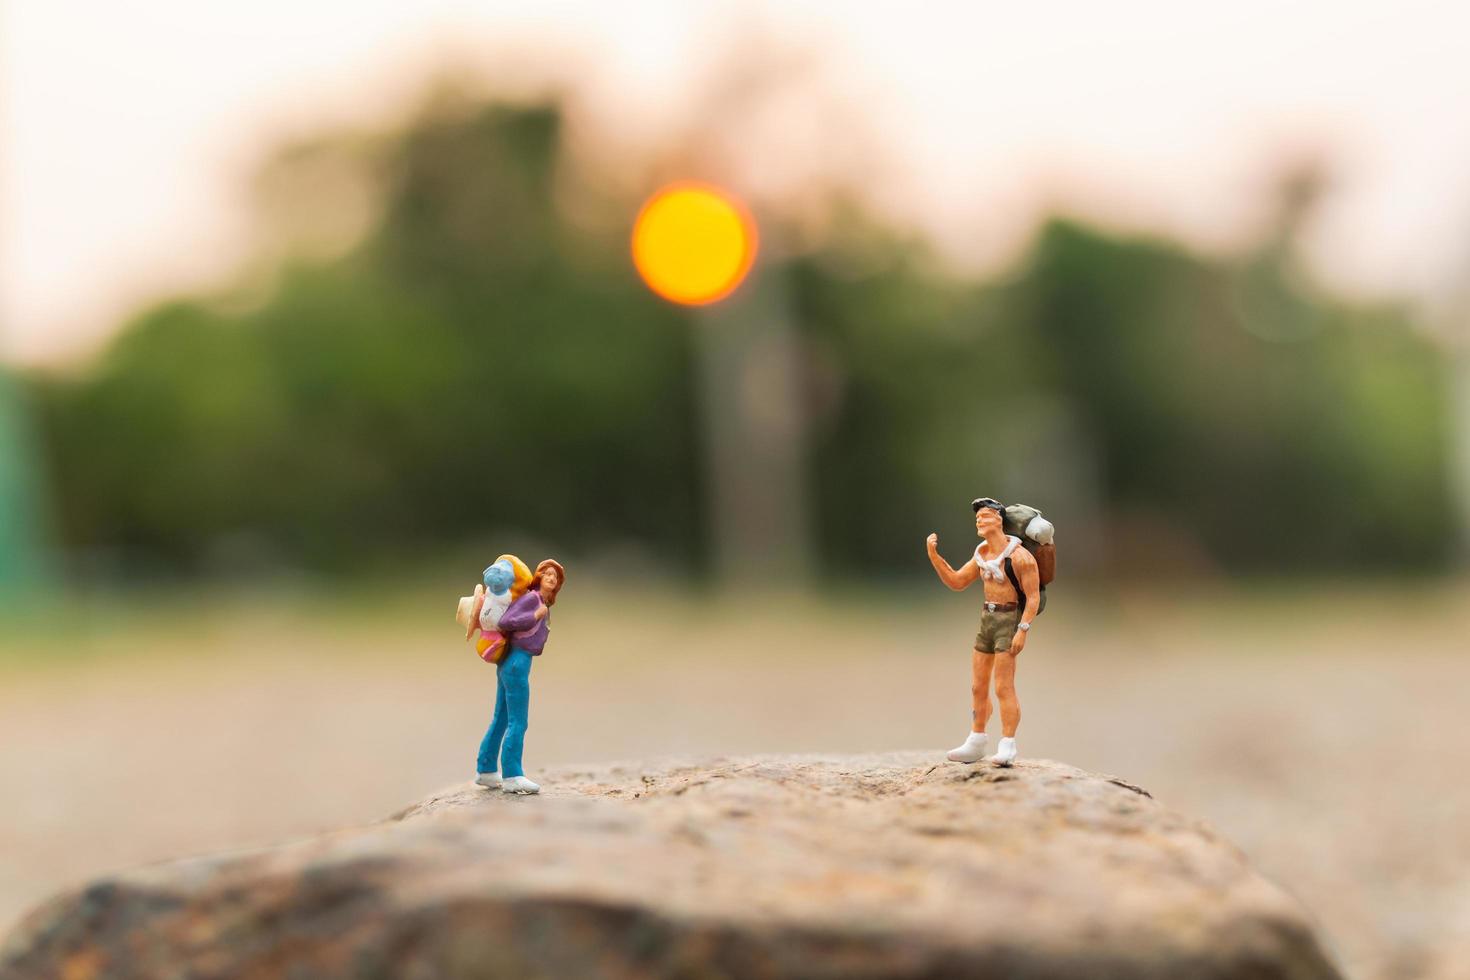 Viajeros en miniatura con mochilas caminando sobre una roca, concepto de viaje y aventura foto